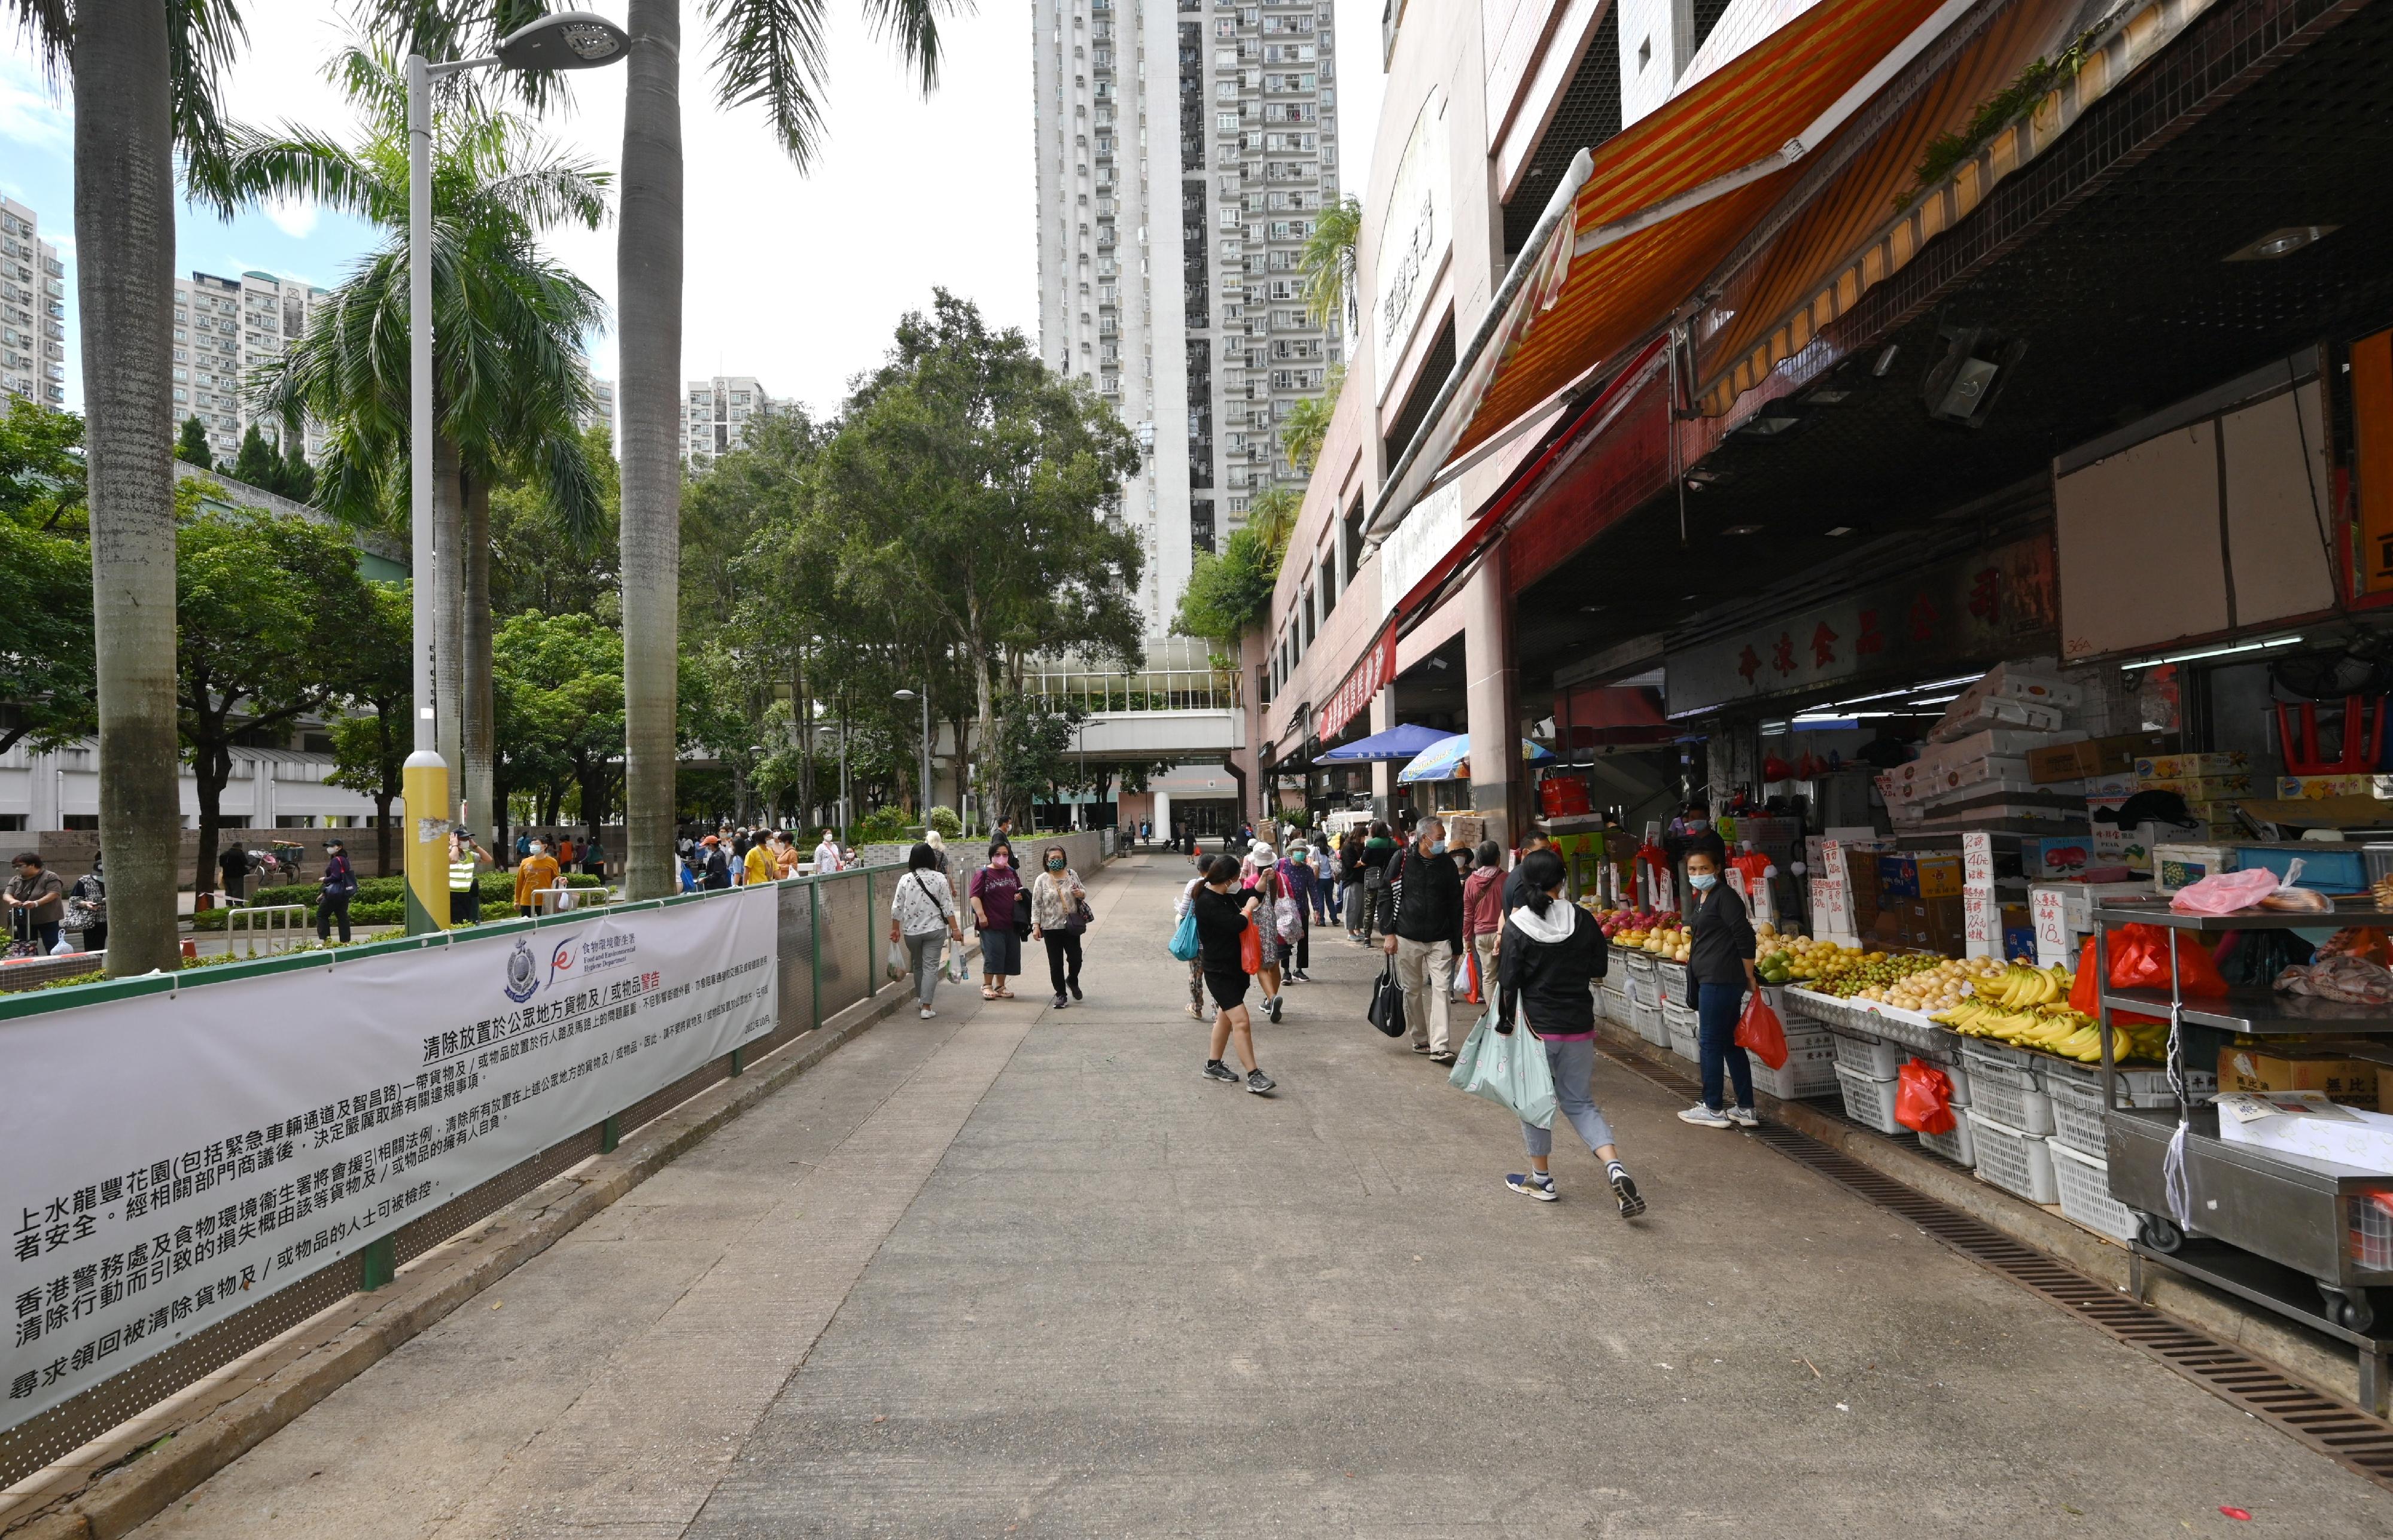 食物环境卫生署（食环署）发言人今日（十月二十四日）表示，食环署与香港警务处自十月三日起先后于各区展开连串严厉执法行动，打击非法店铺阻街活动。图示上水区一条街道于联合行动后的情况。